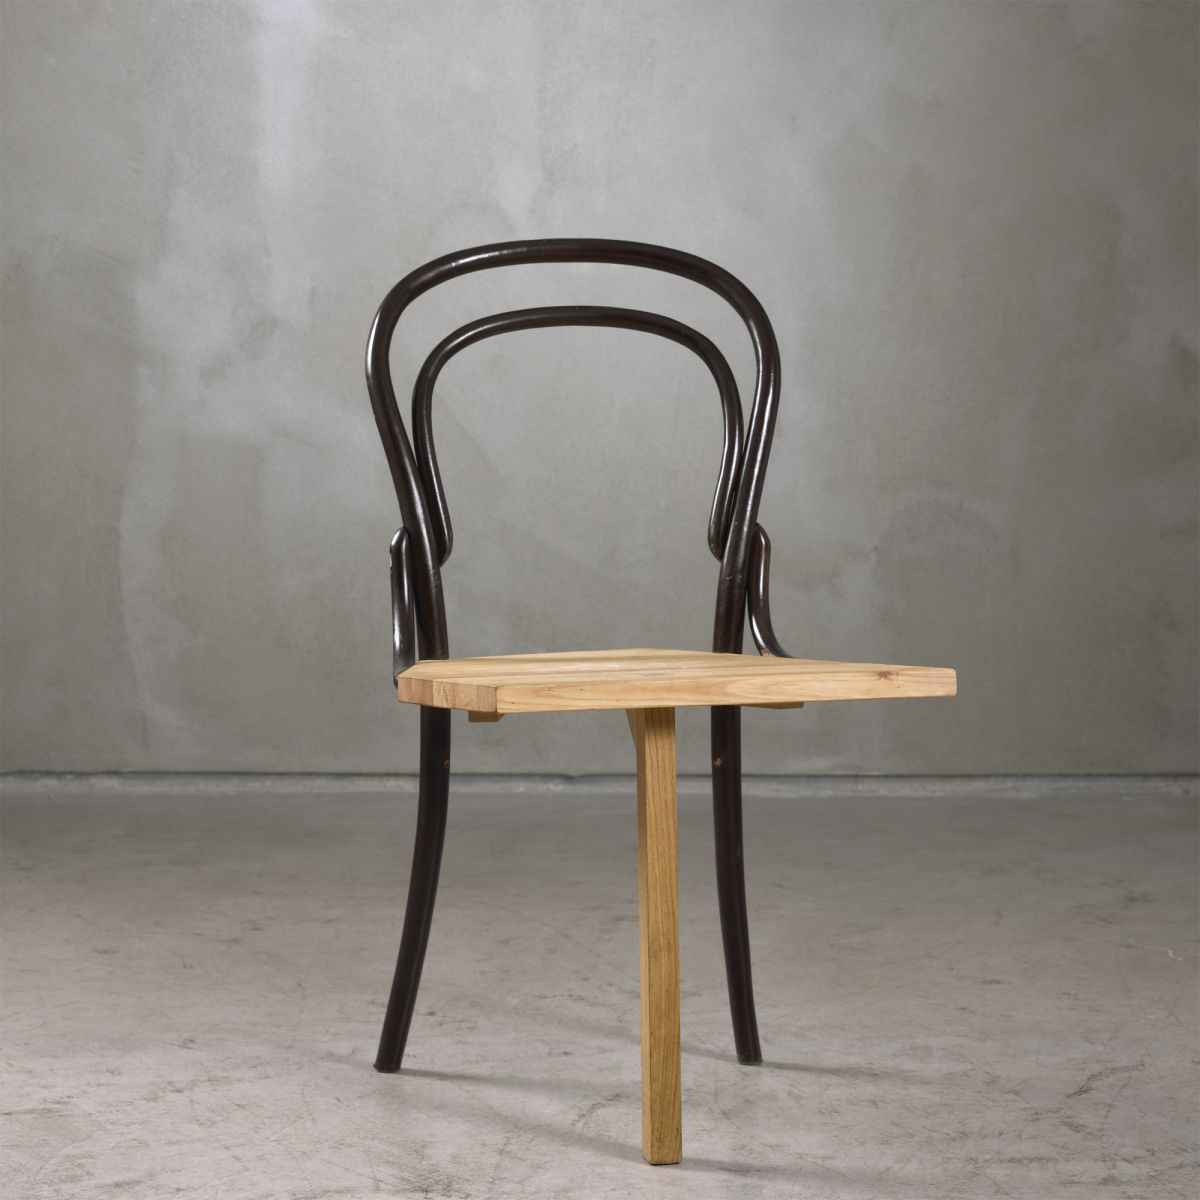 Chairs Manifesta Martino Gamper pic-1